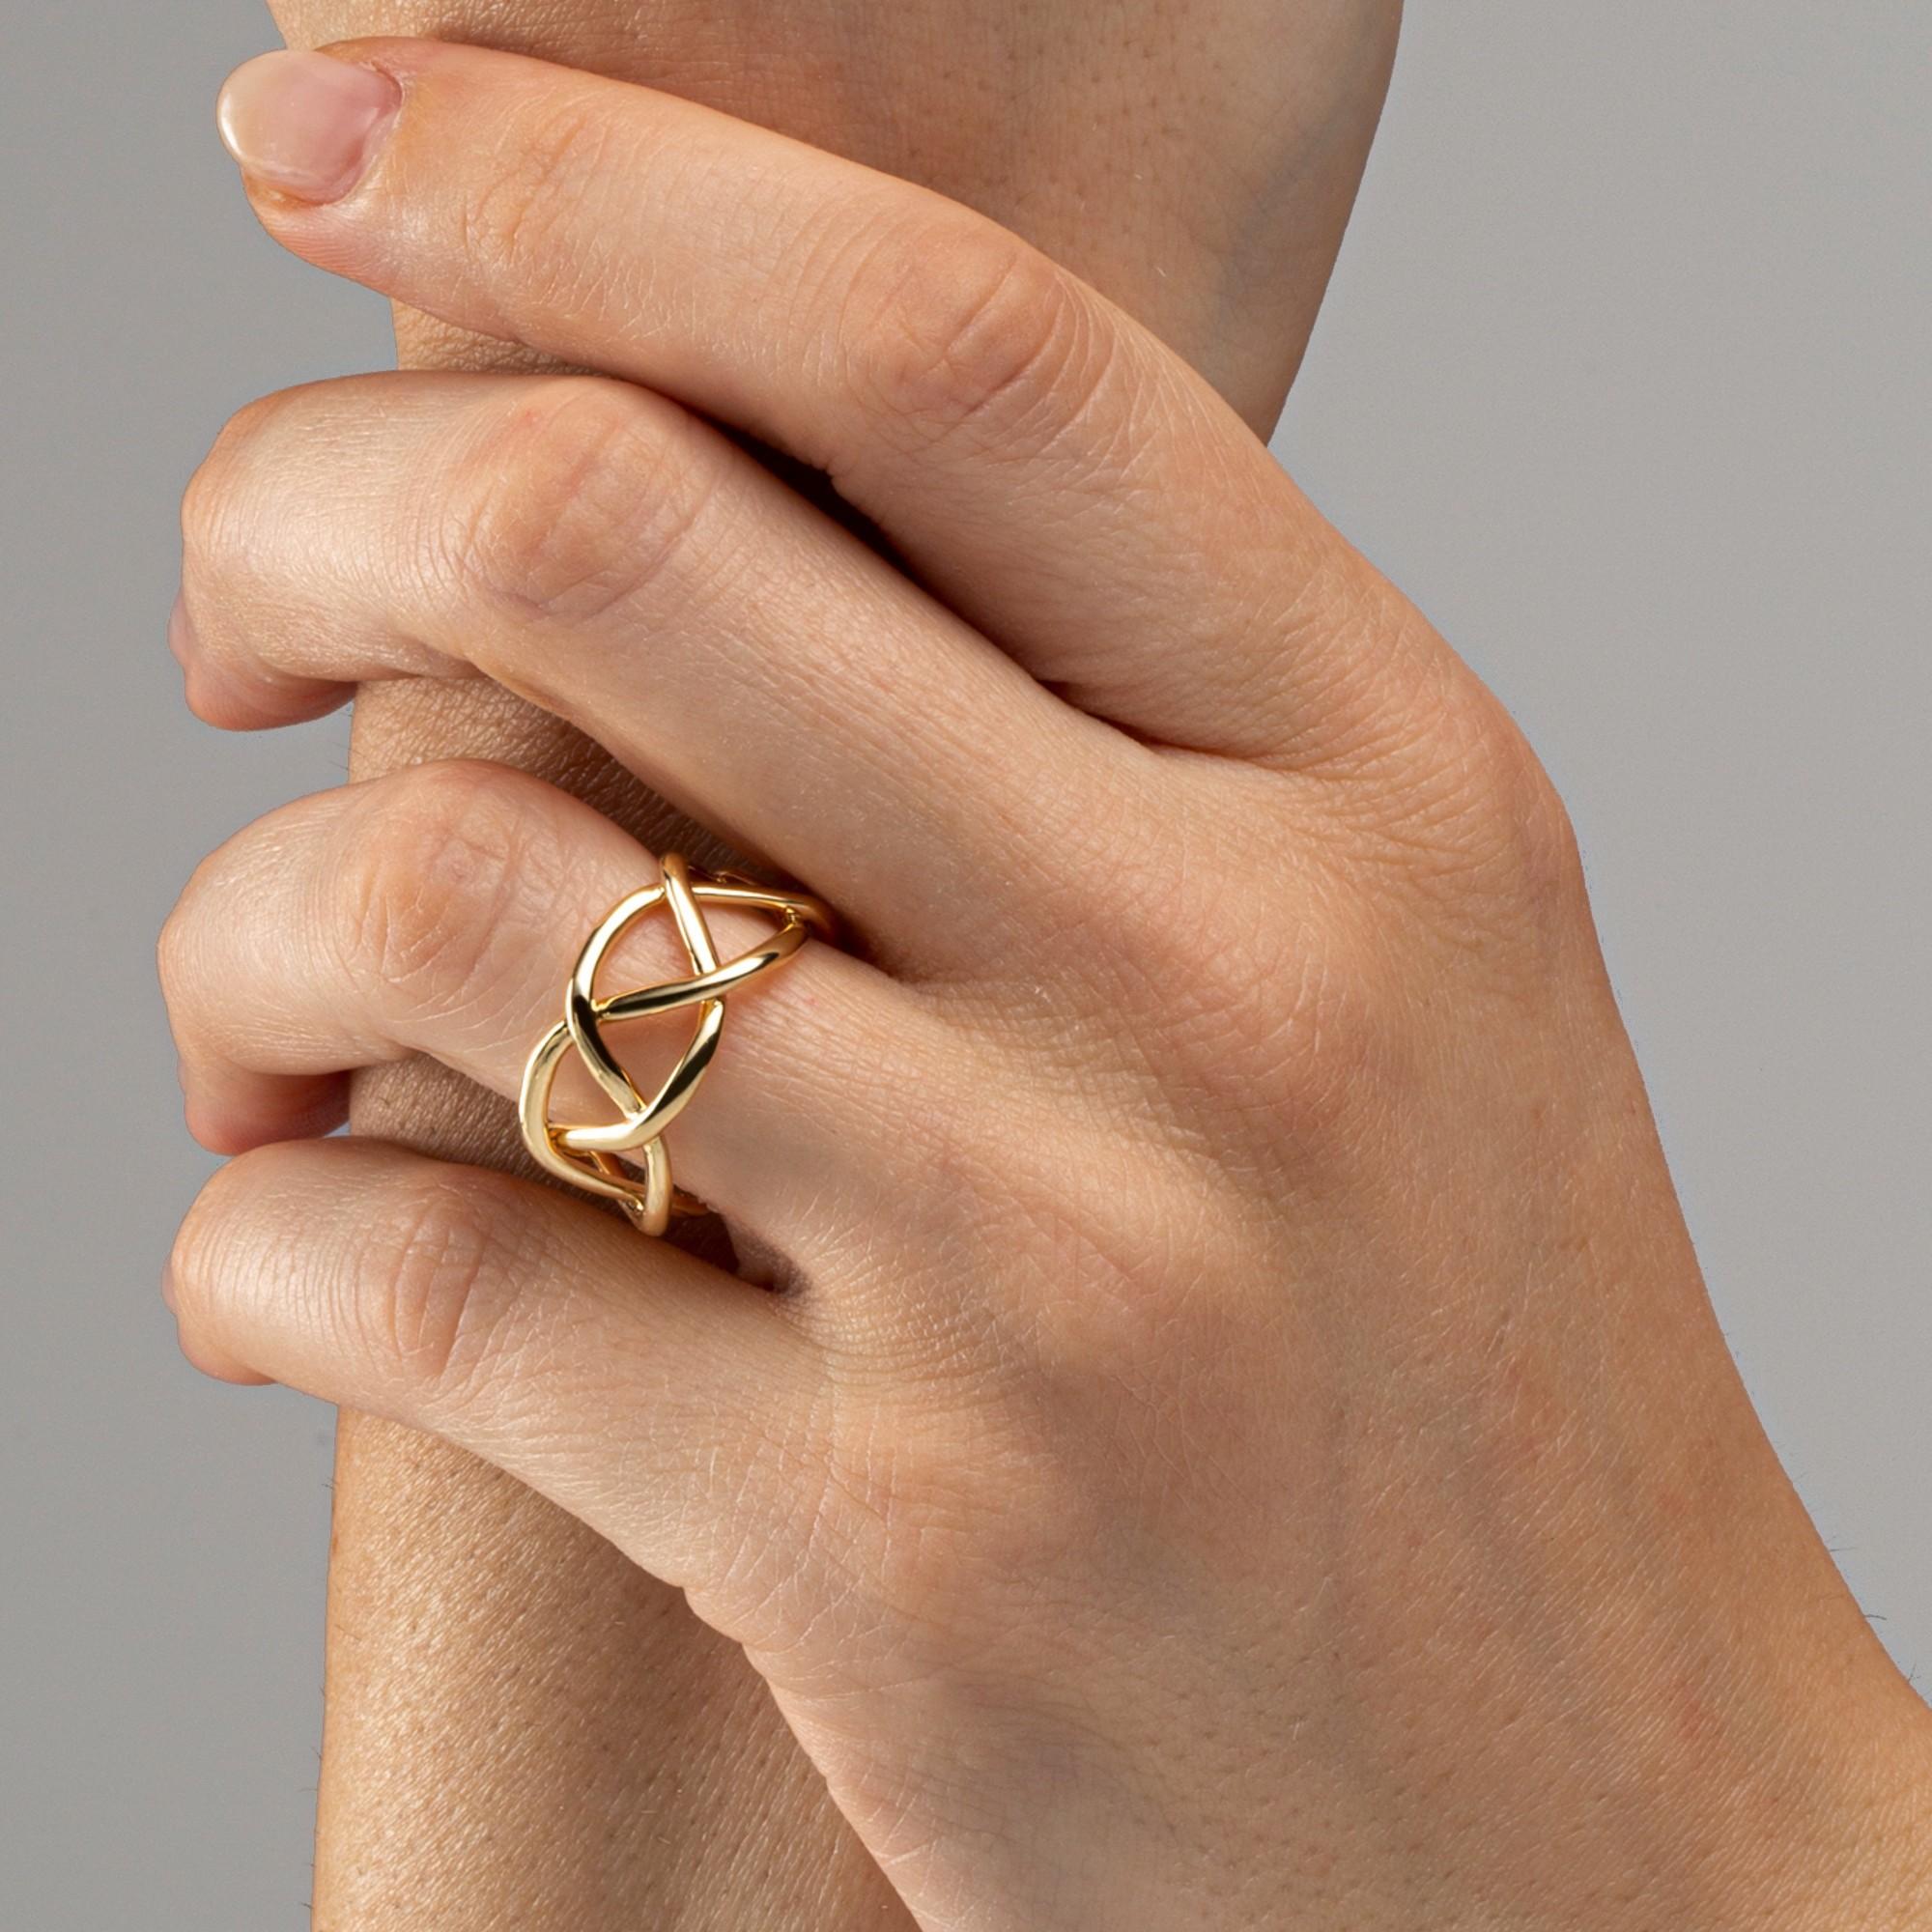 Alex Jona Design Kollektion, handgefertigt in Italien, Ring aus 18 Karat Gelbgold mit Treillage.
Dieser Ring hat die Größe US 6.5, kann aber auf jede Größe angepasst werden. Erhältlich in verschiedenen Goldfarben.
Die Schmuckstücke von Alex Jona